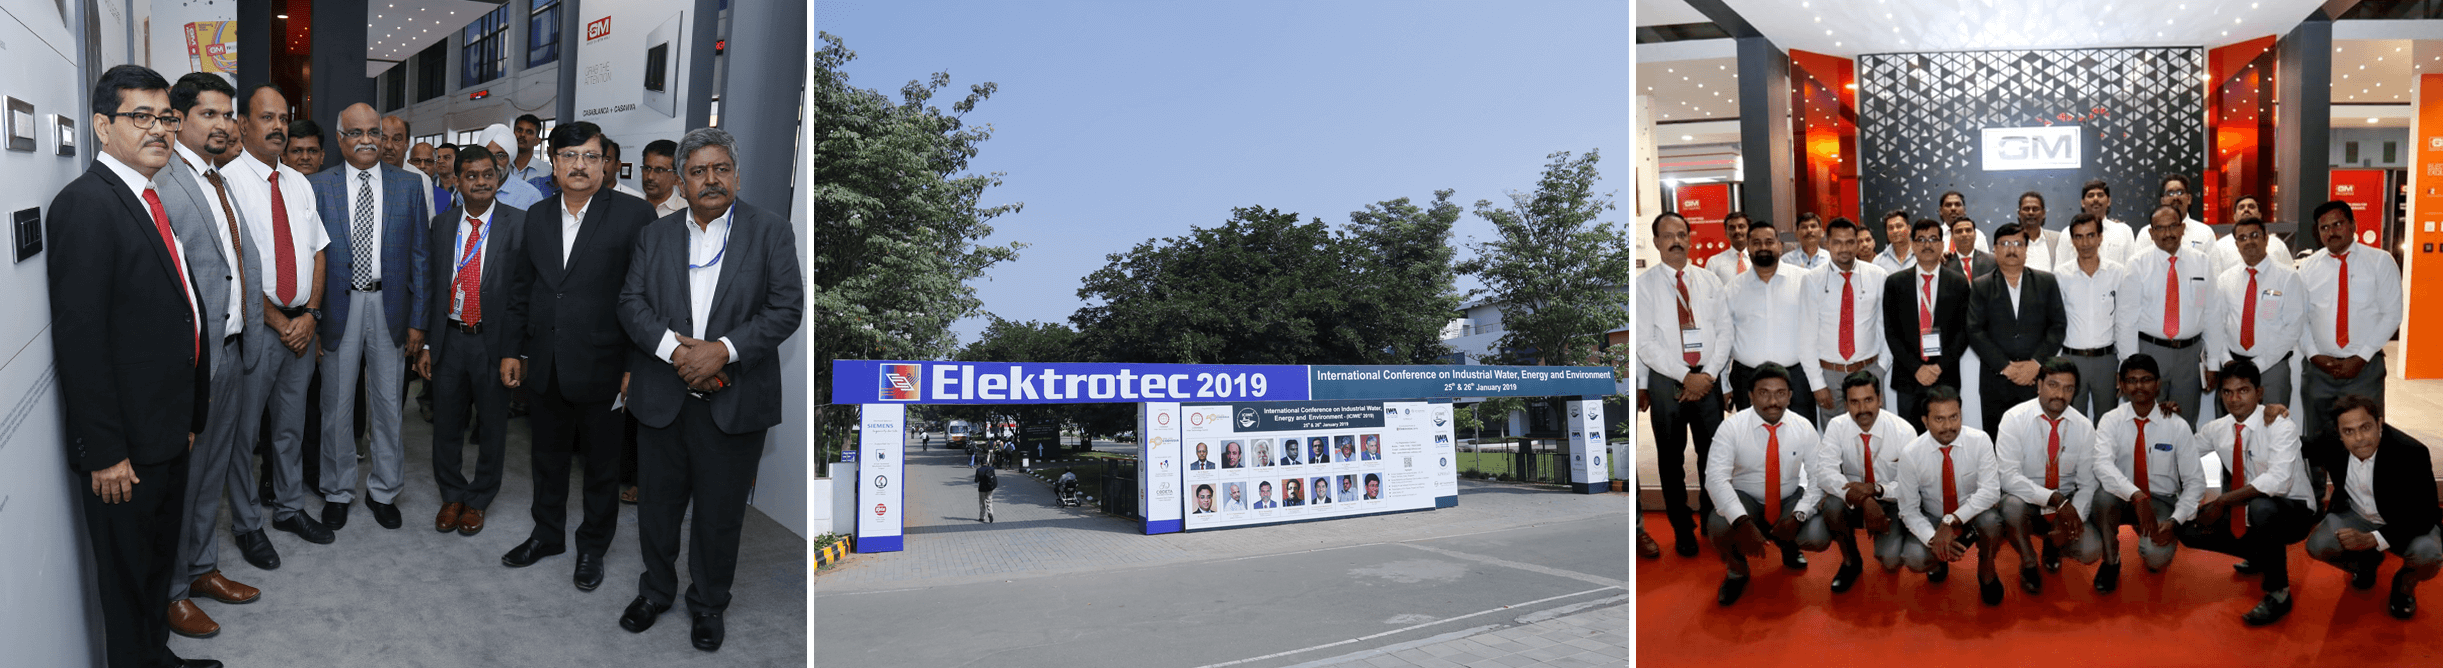 GM Modular at Elektrotec 2019, Coimbatore.